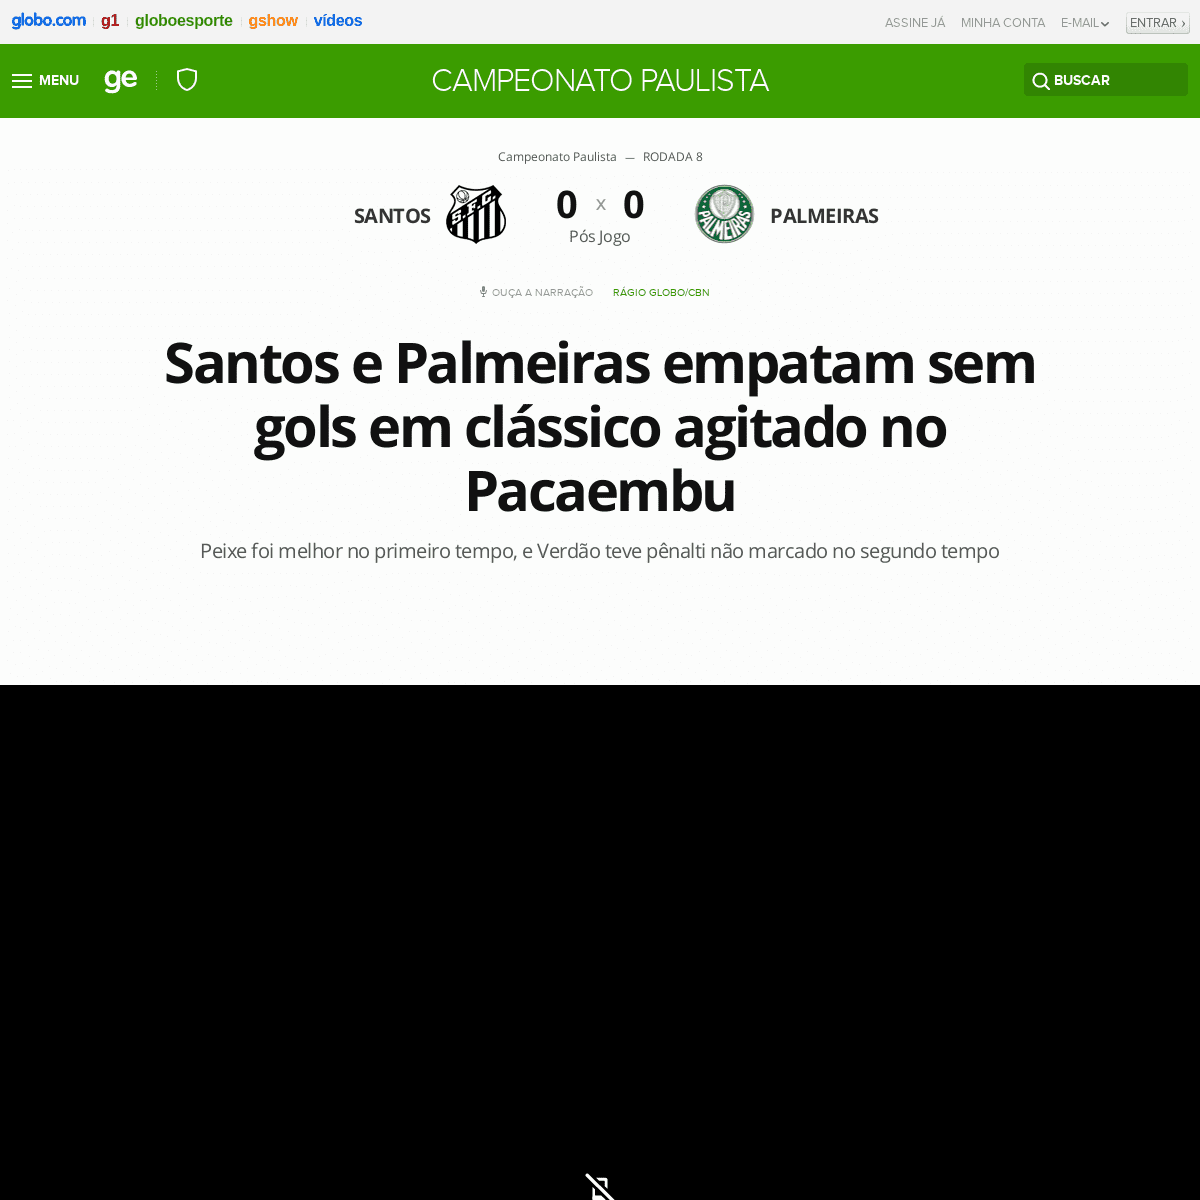 A complete backup of globoesporte.globo.com/sp/santos-e-regiao/futebol/campeonato-paulista/jogo/29-02-2020/santos-palmeiras.ghtm